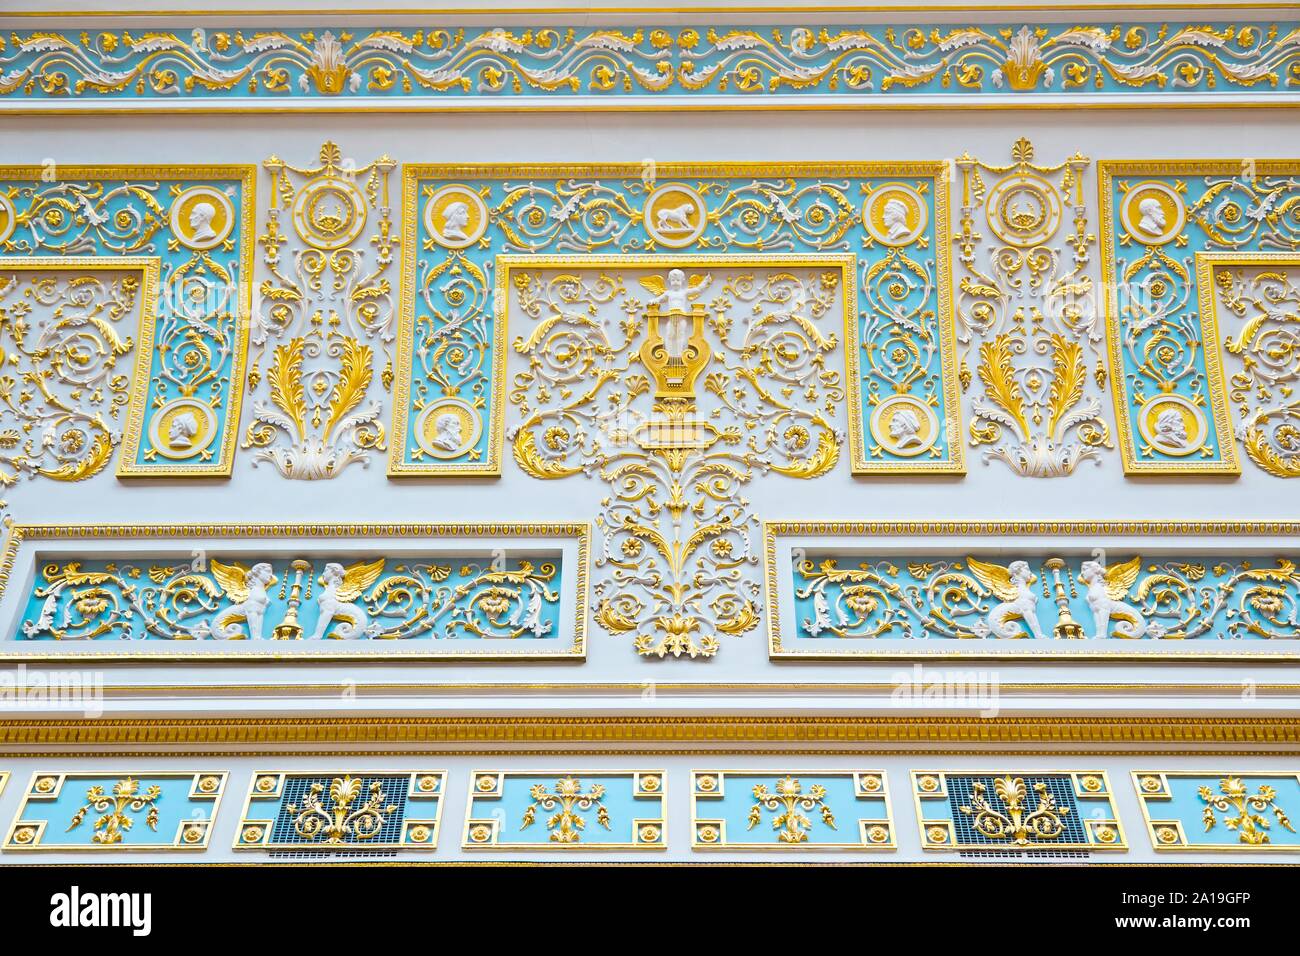 Saint-pétersbourg, Russie - 7 juillet, 2019 : Musée de l'Ermitage, les détails de décoration sur le plafond Banque D'Images